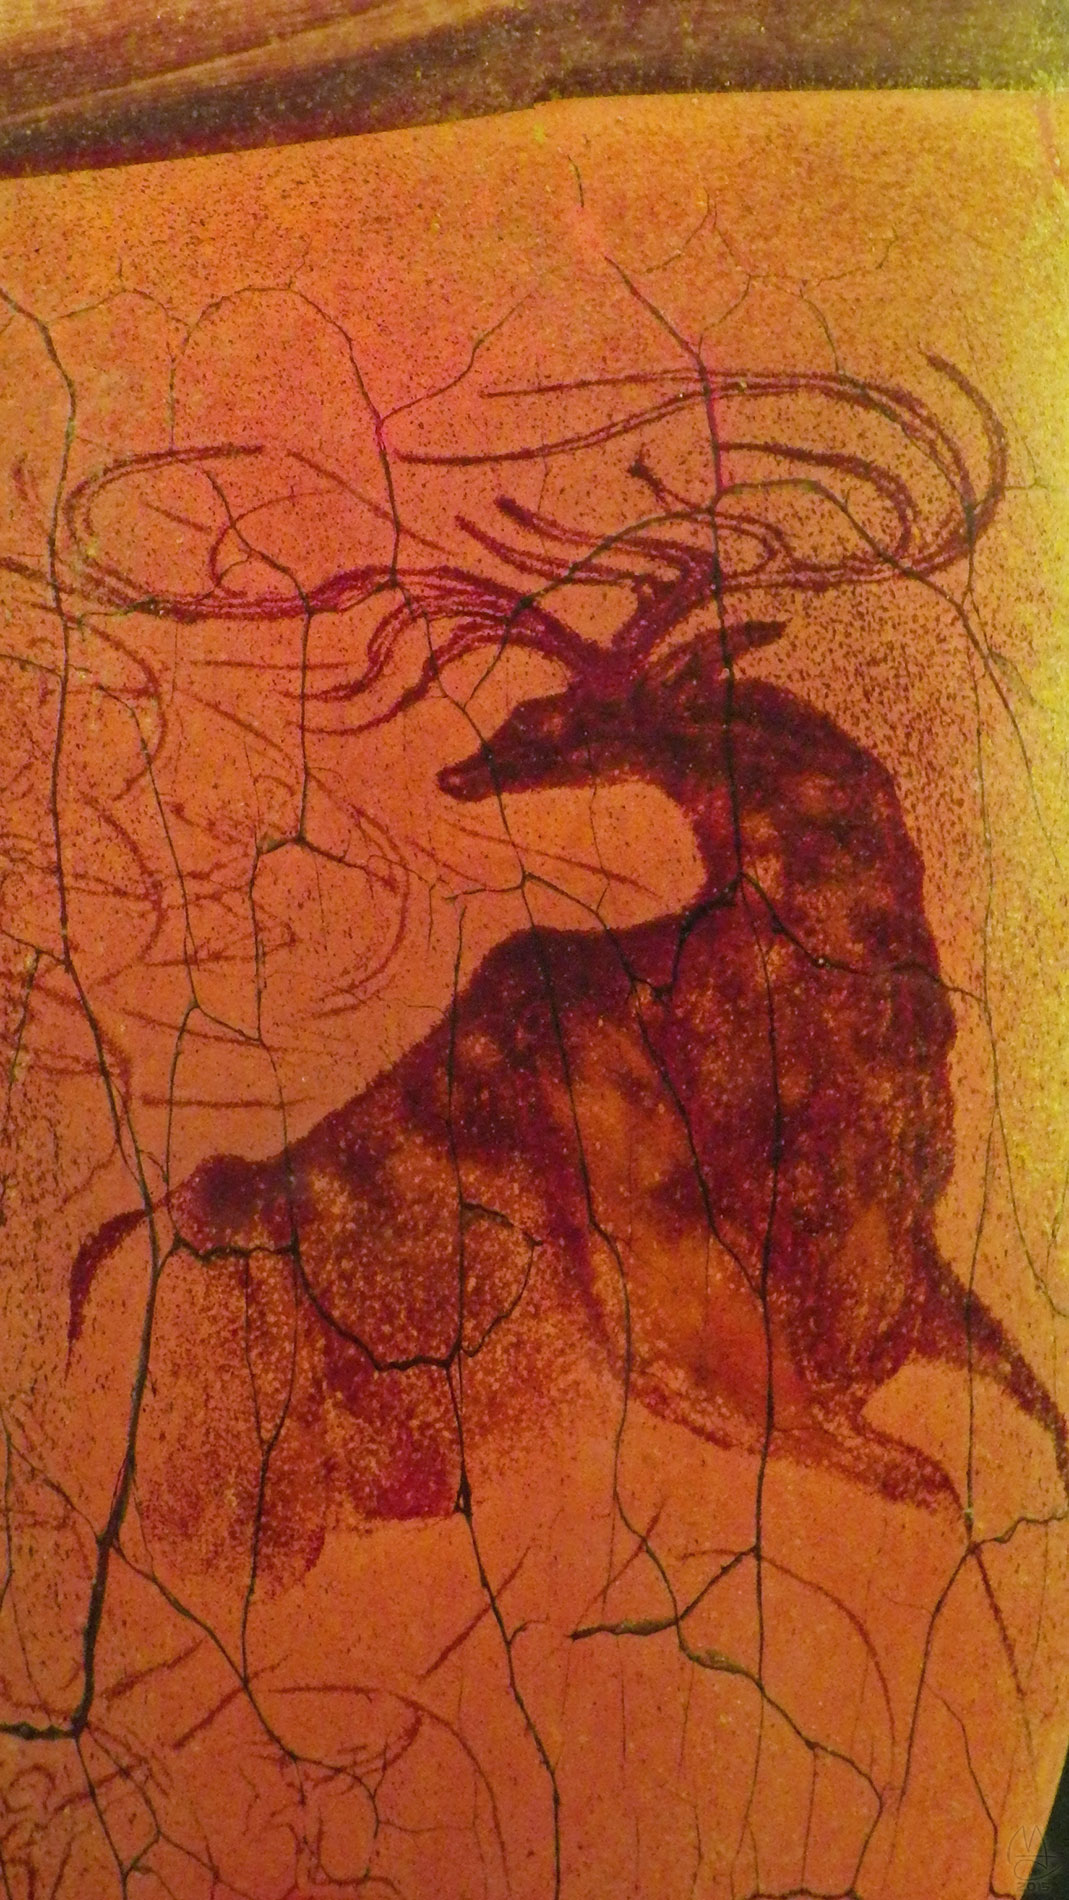 Suspended Artifact, William Morris, 1994